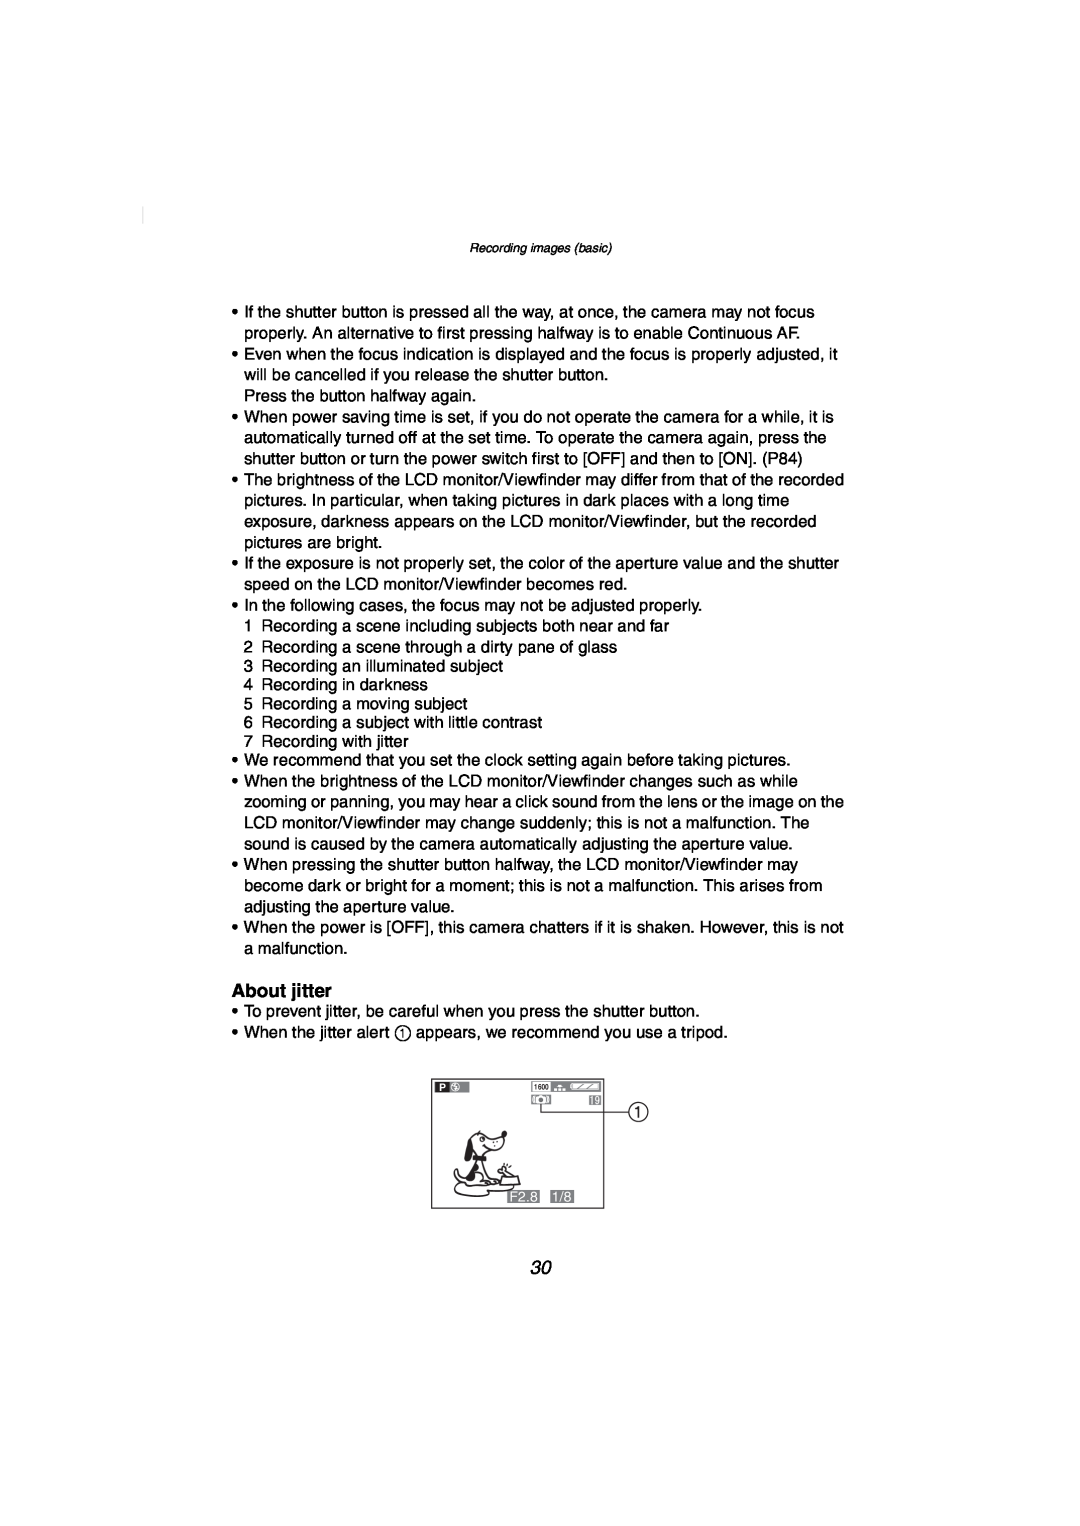 Panasonic DMC-FZ2PP operating instructions About jitter 